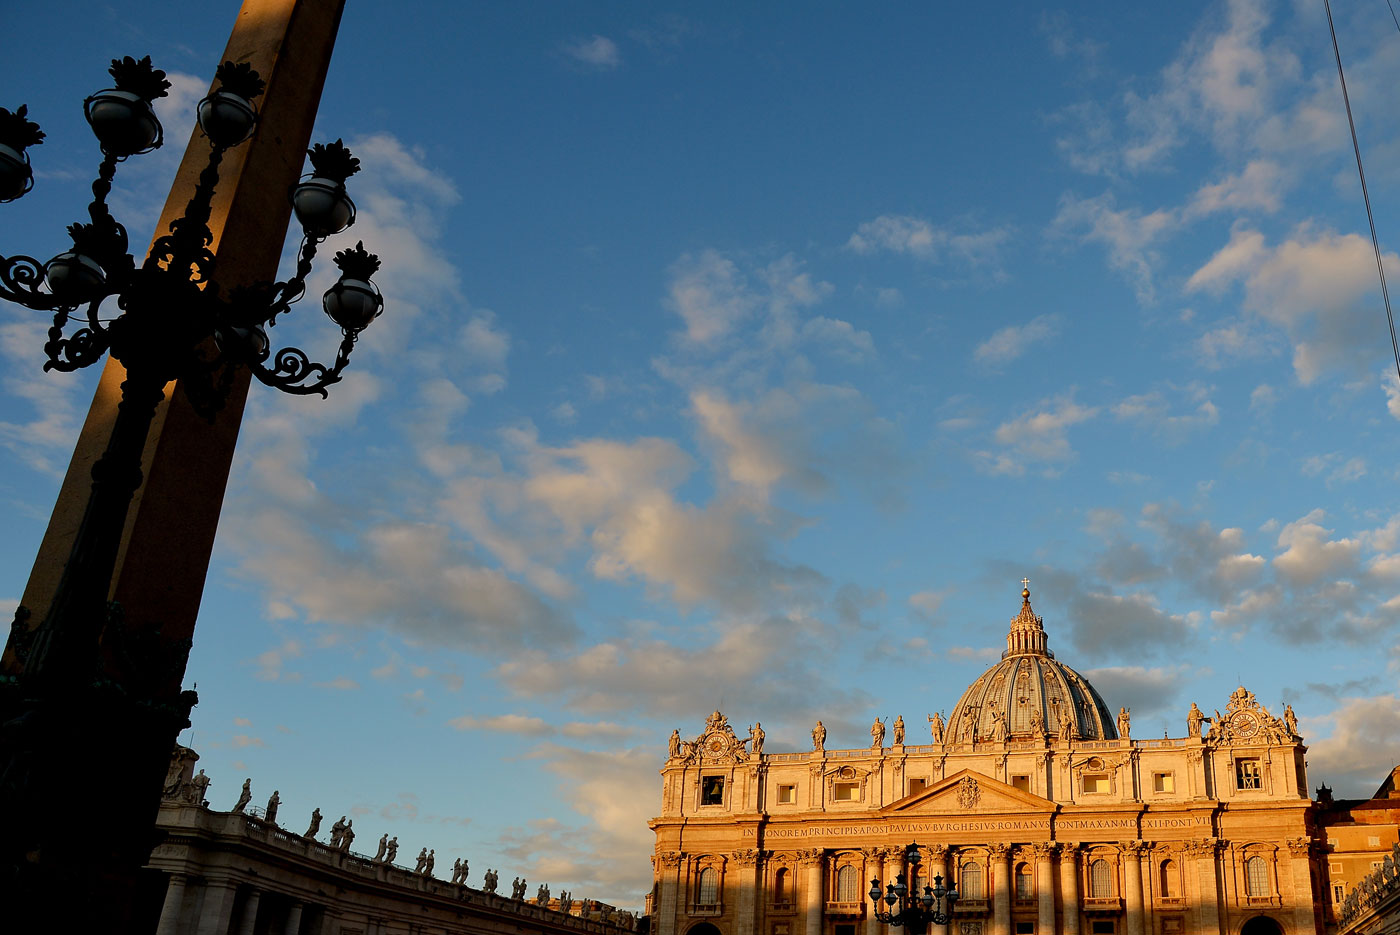 El Vaticano consultará sobre la nulidad matrimonial y el trato a homosexuales